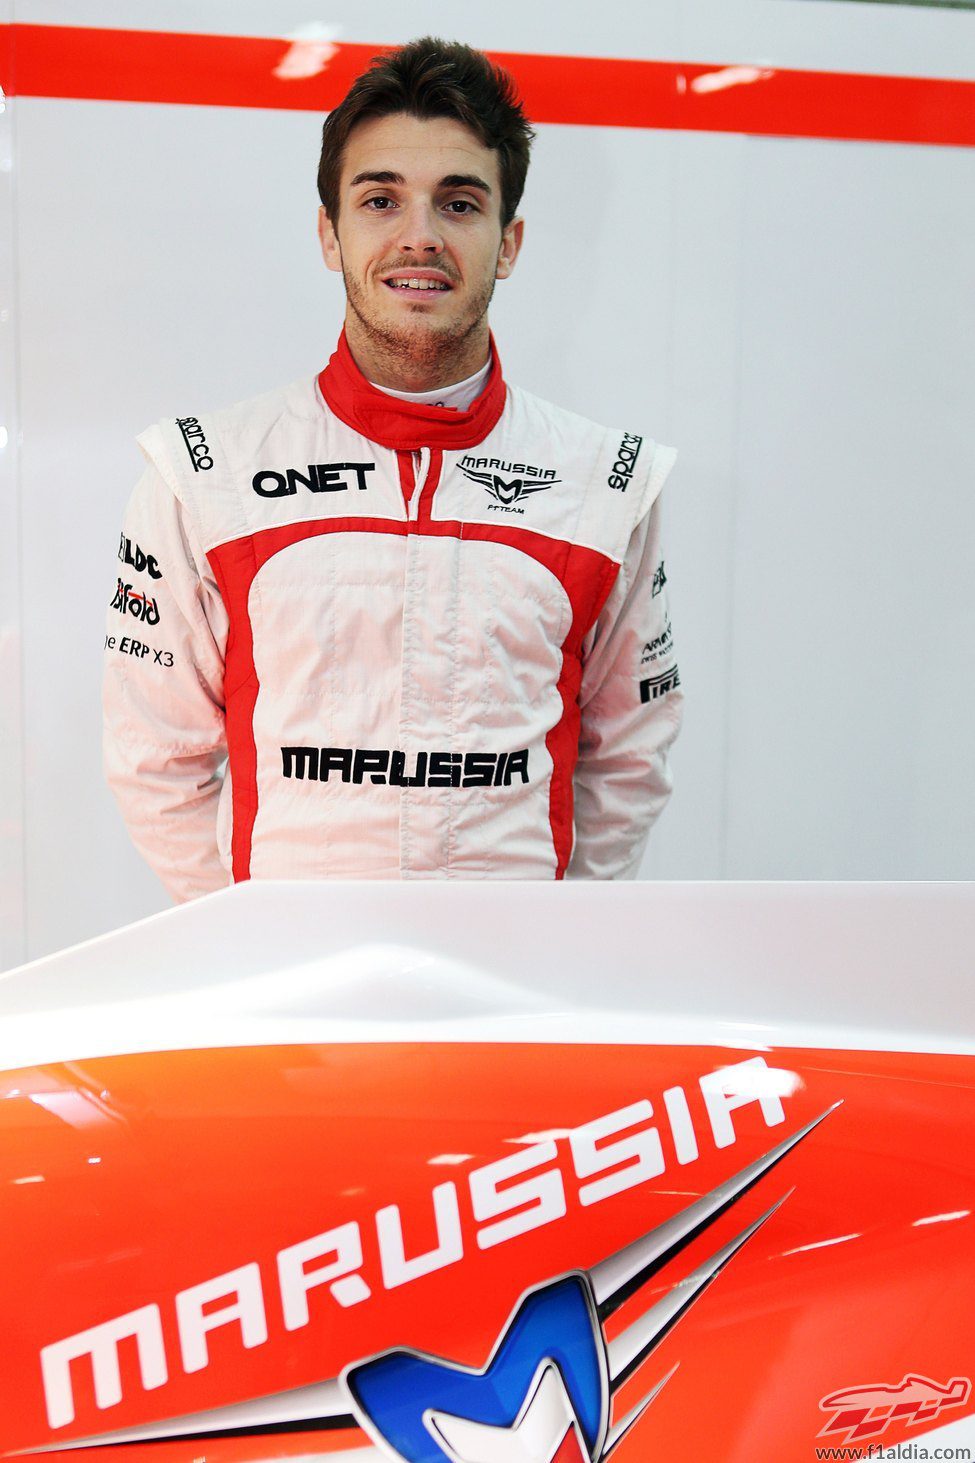 20436_jules-bianchi-nuevo-piloto-de-marussia-para-la-temporada-2013.jpg